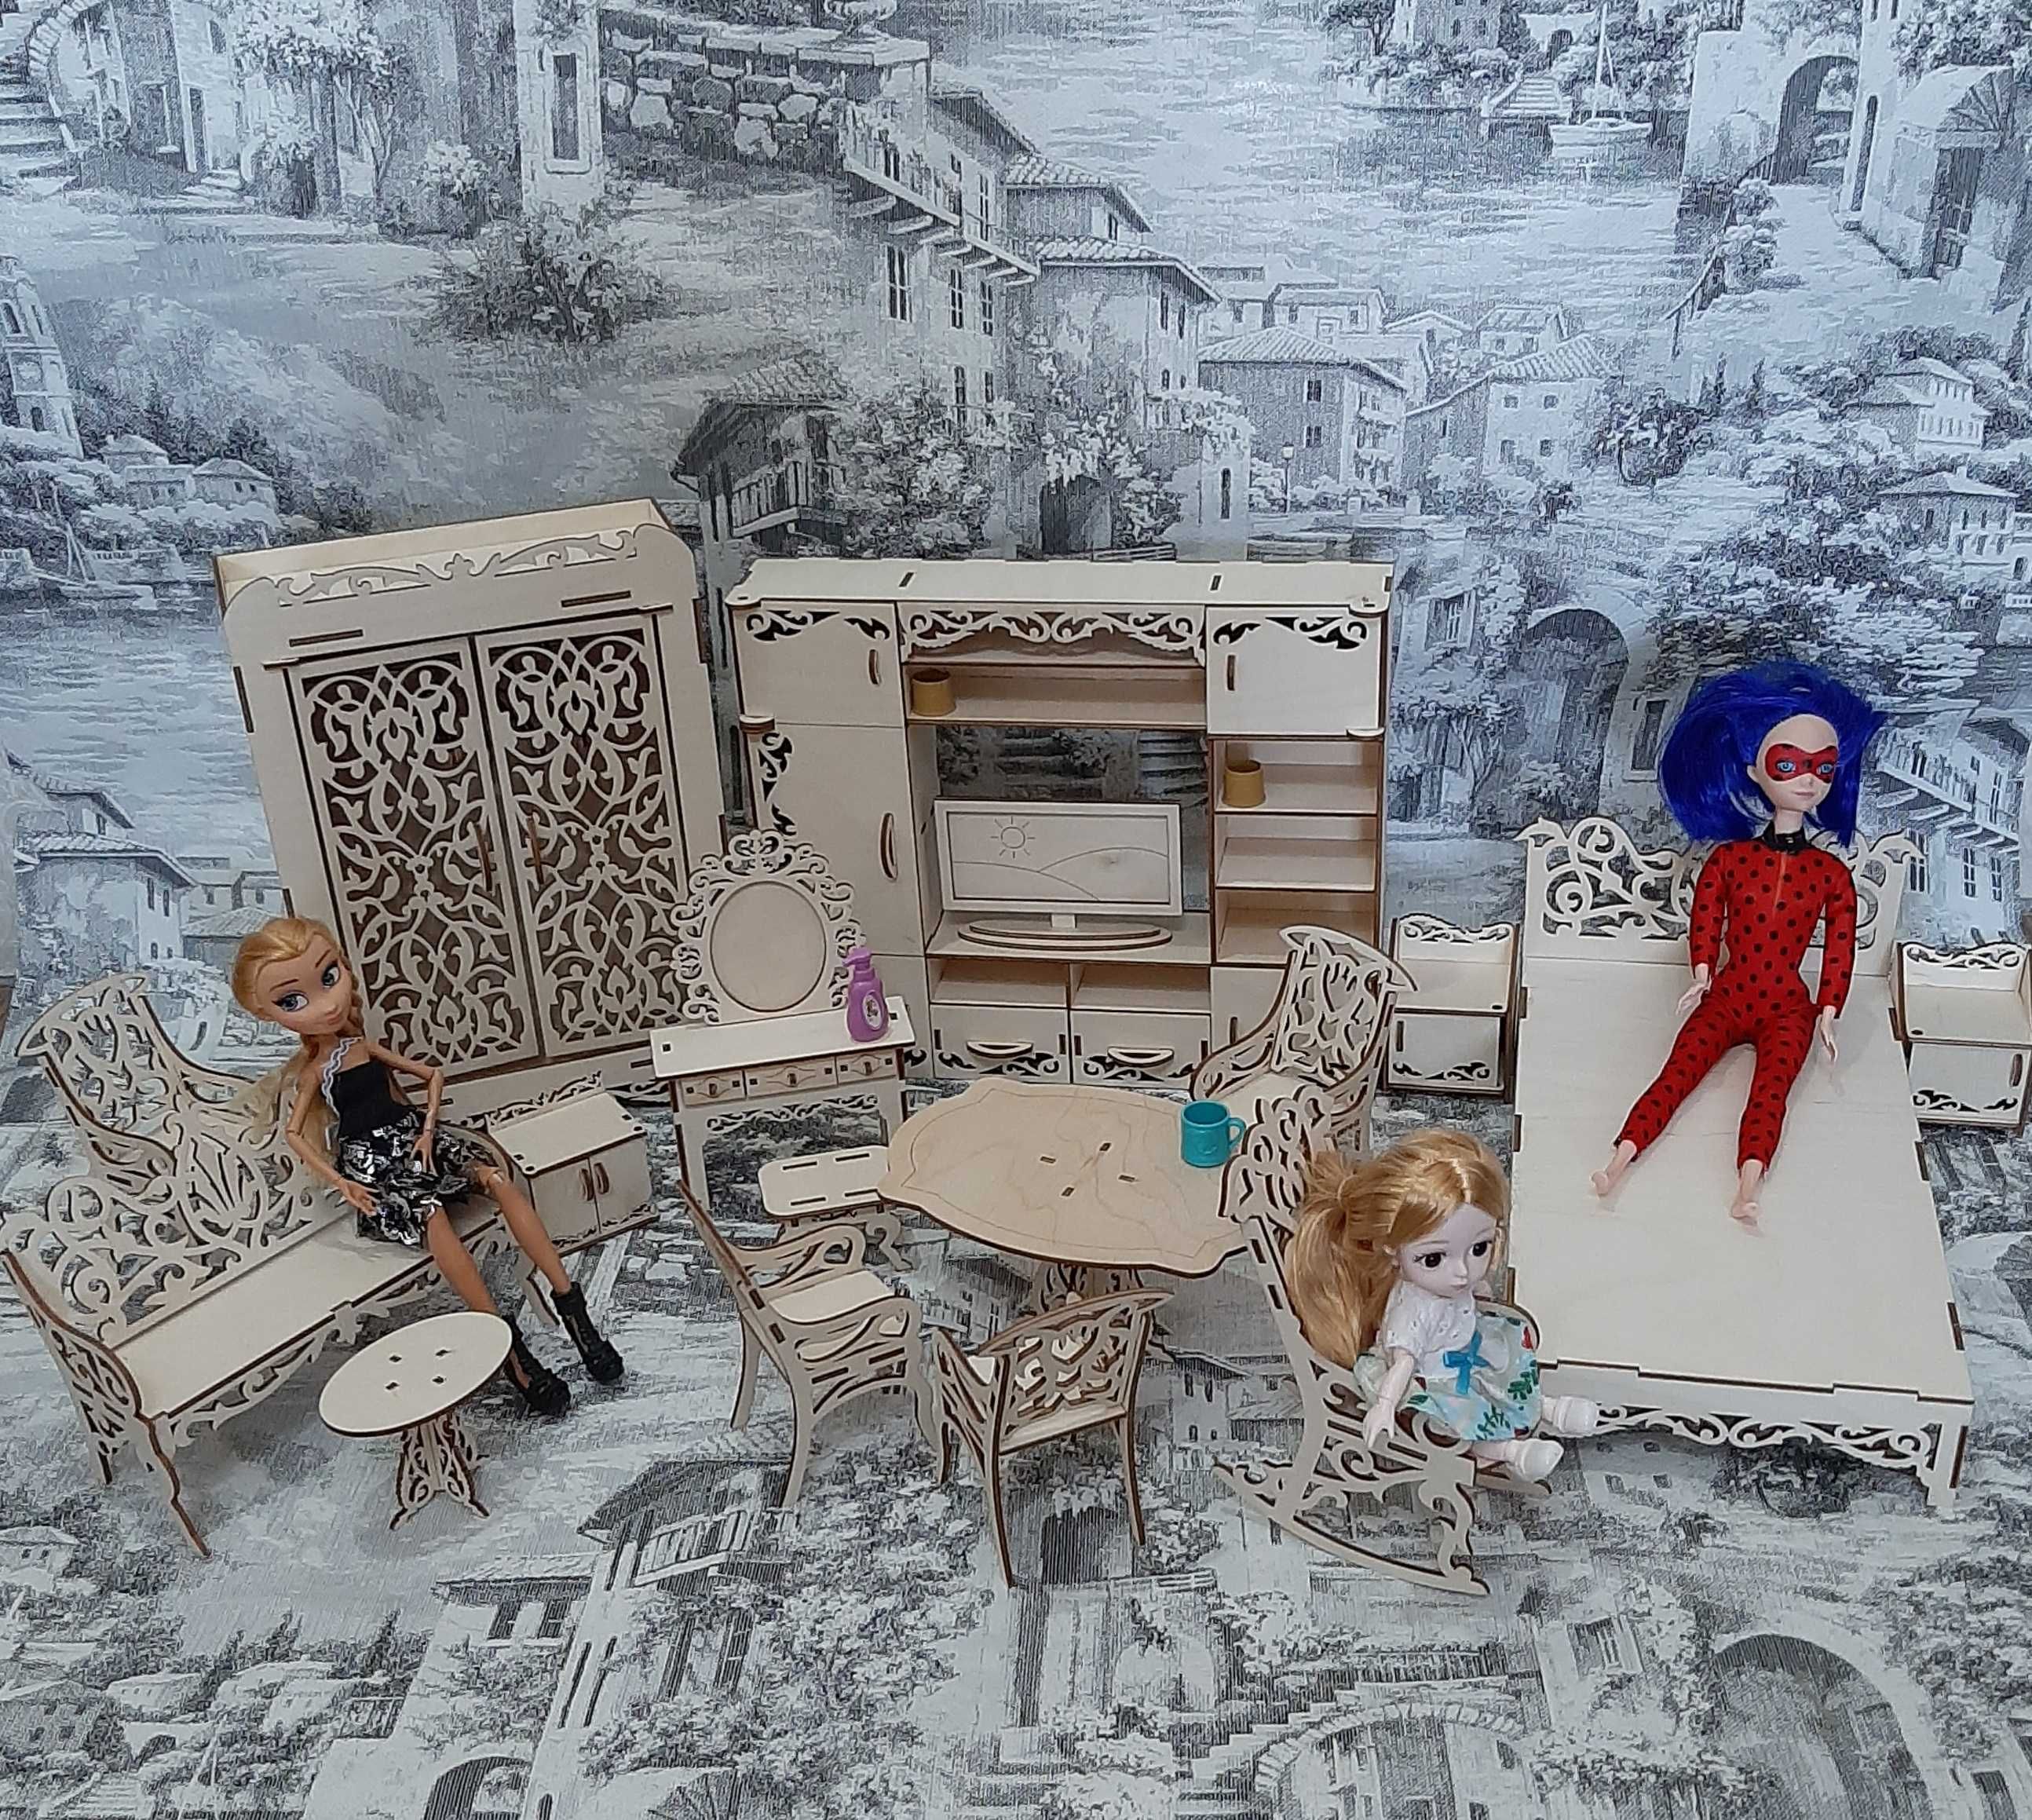 Кукольная мебель для Барби